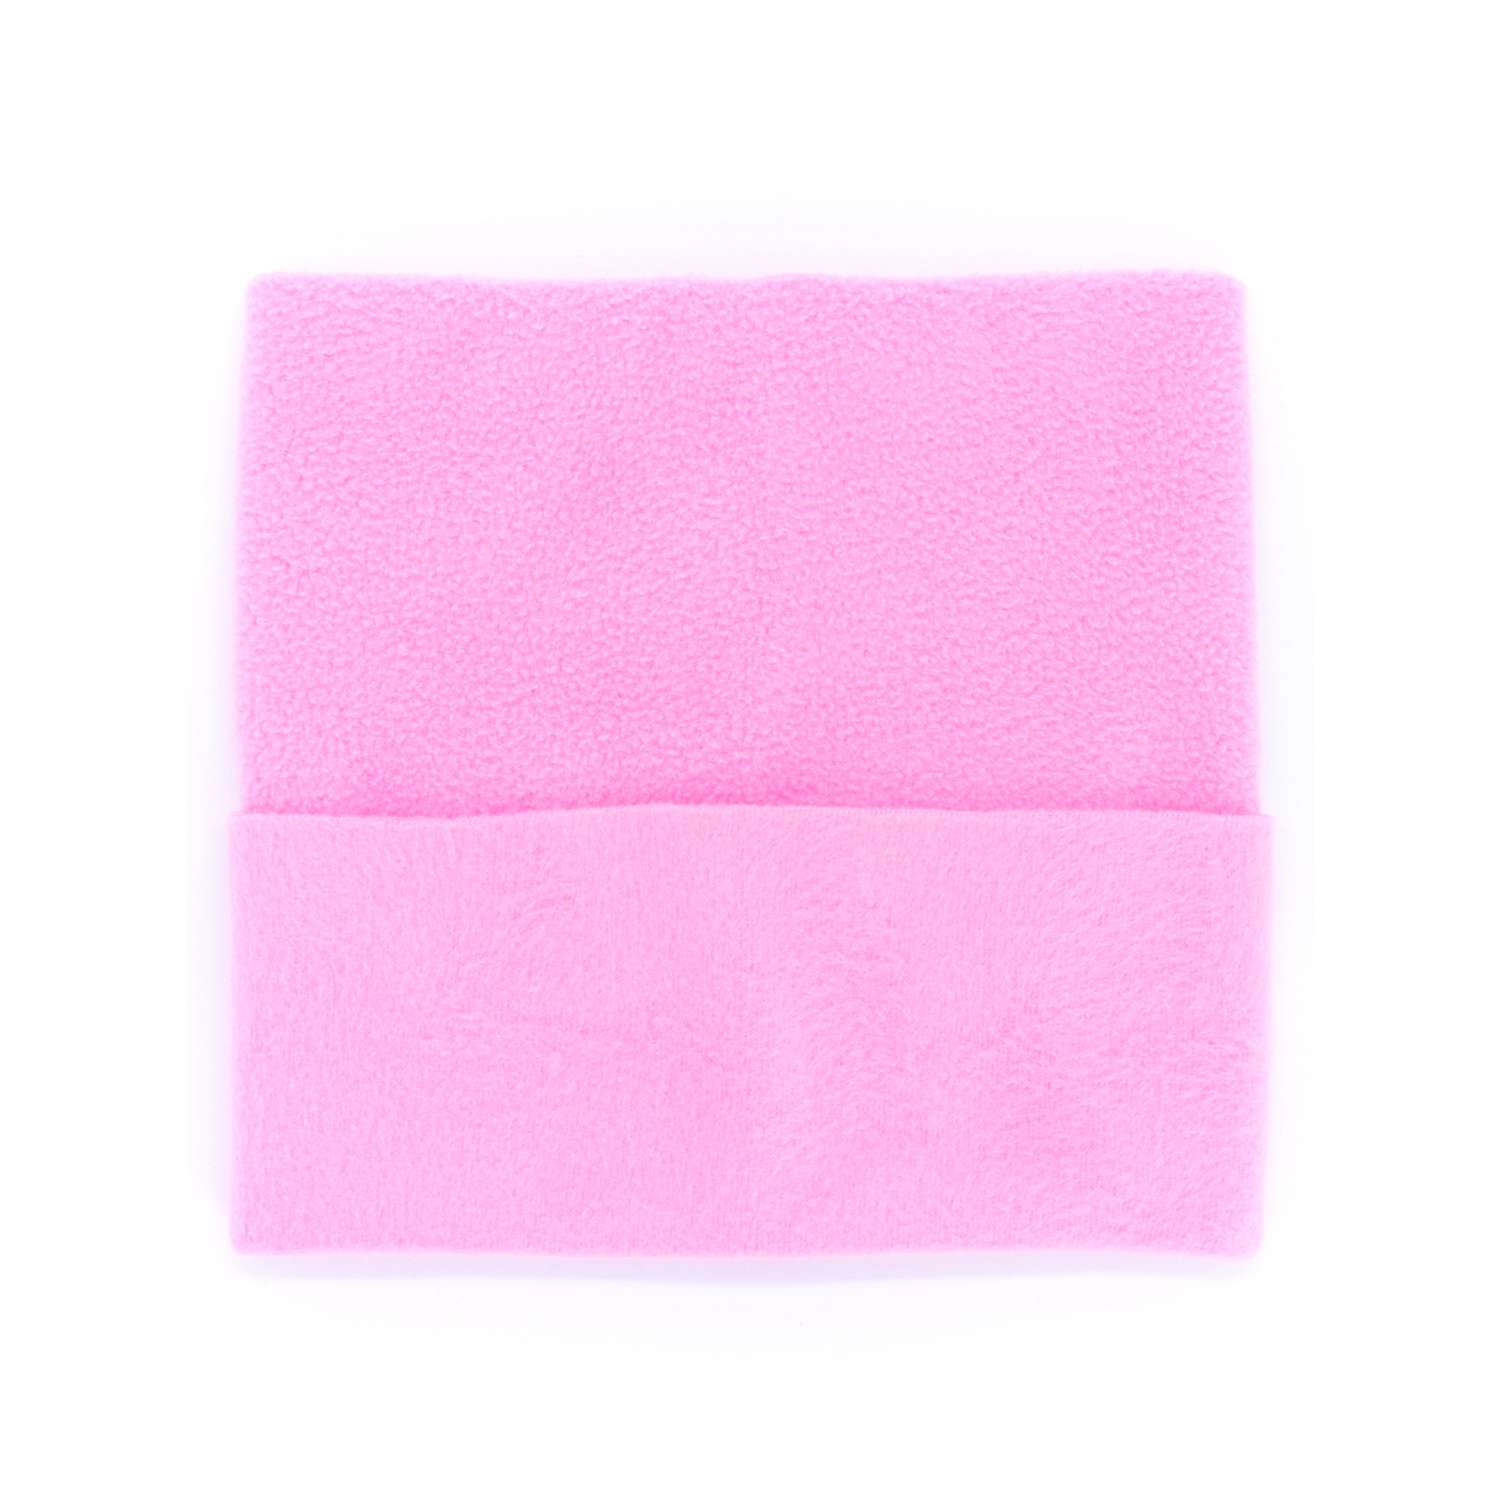 Комплект одежды Модница для пупса 43-48 см 6120 светло-розовый 6120светло-розовый - фото 9